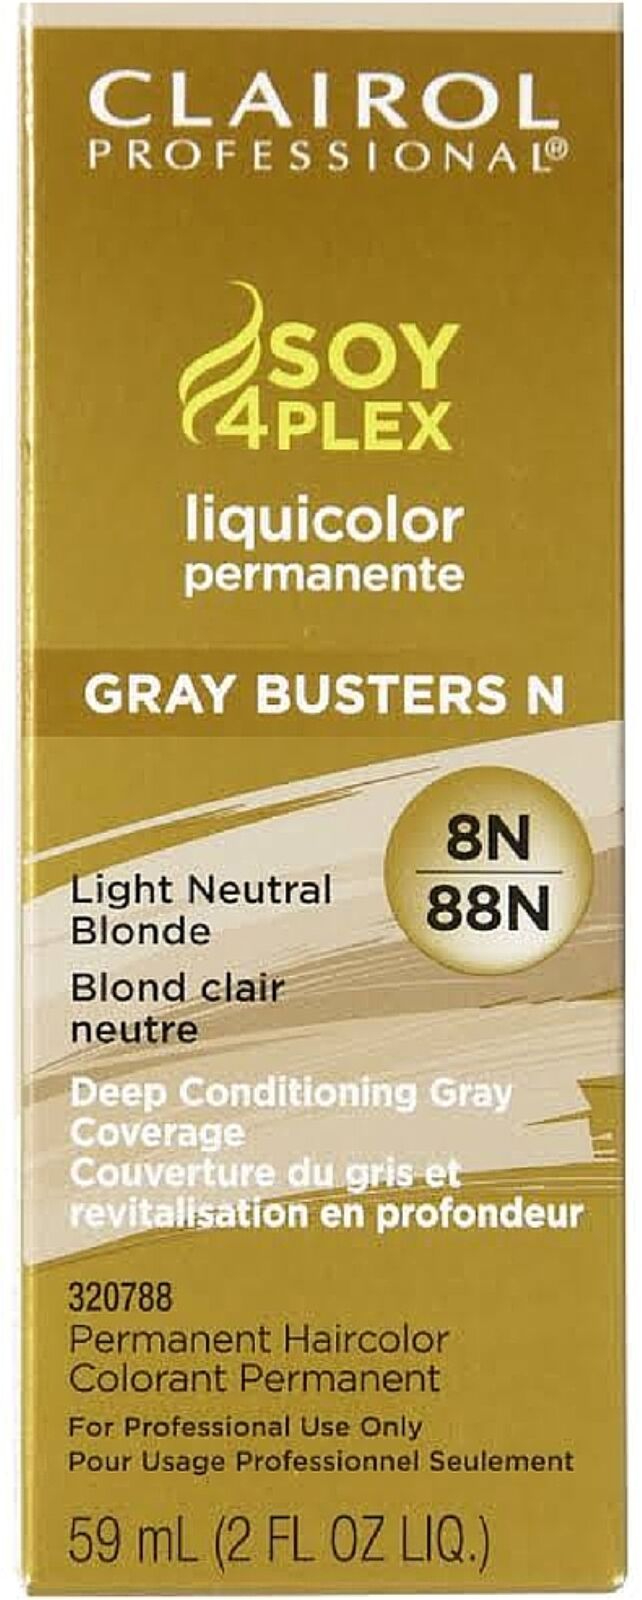 Soy4plex Liquicolor Permanent Hair Color - 8N/88N Light Neutral Blonde